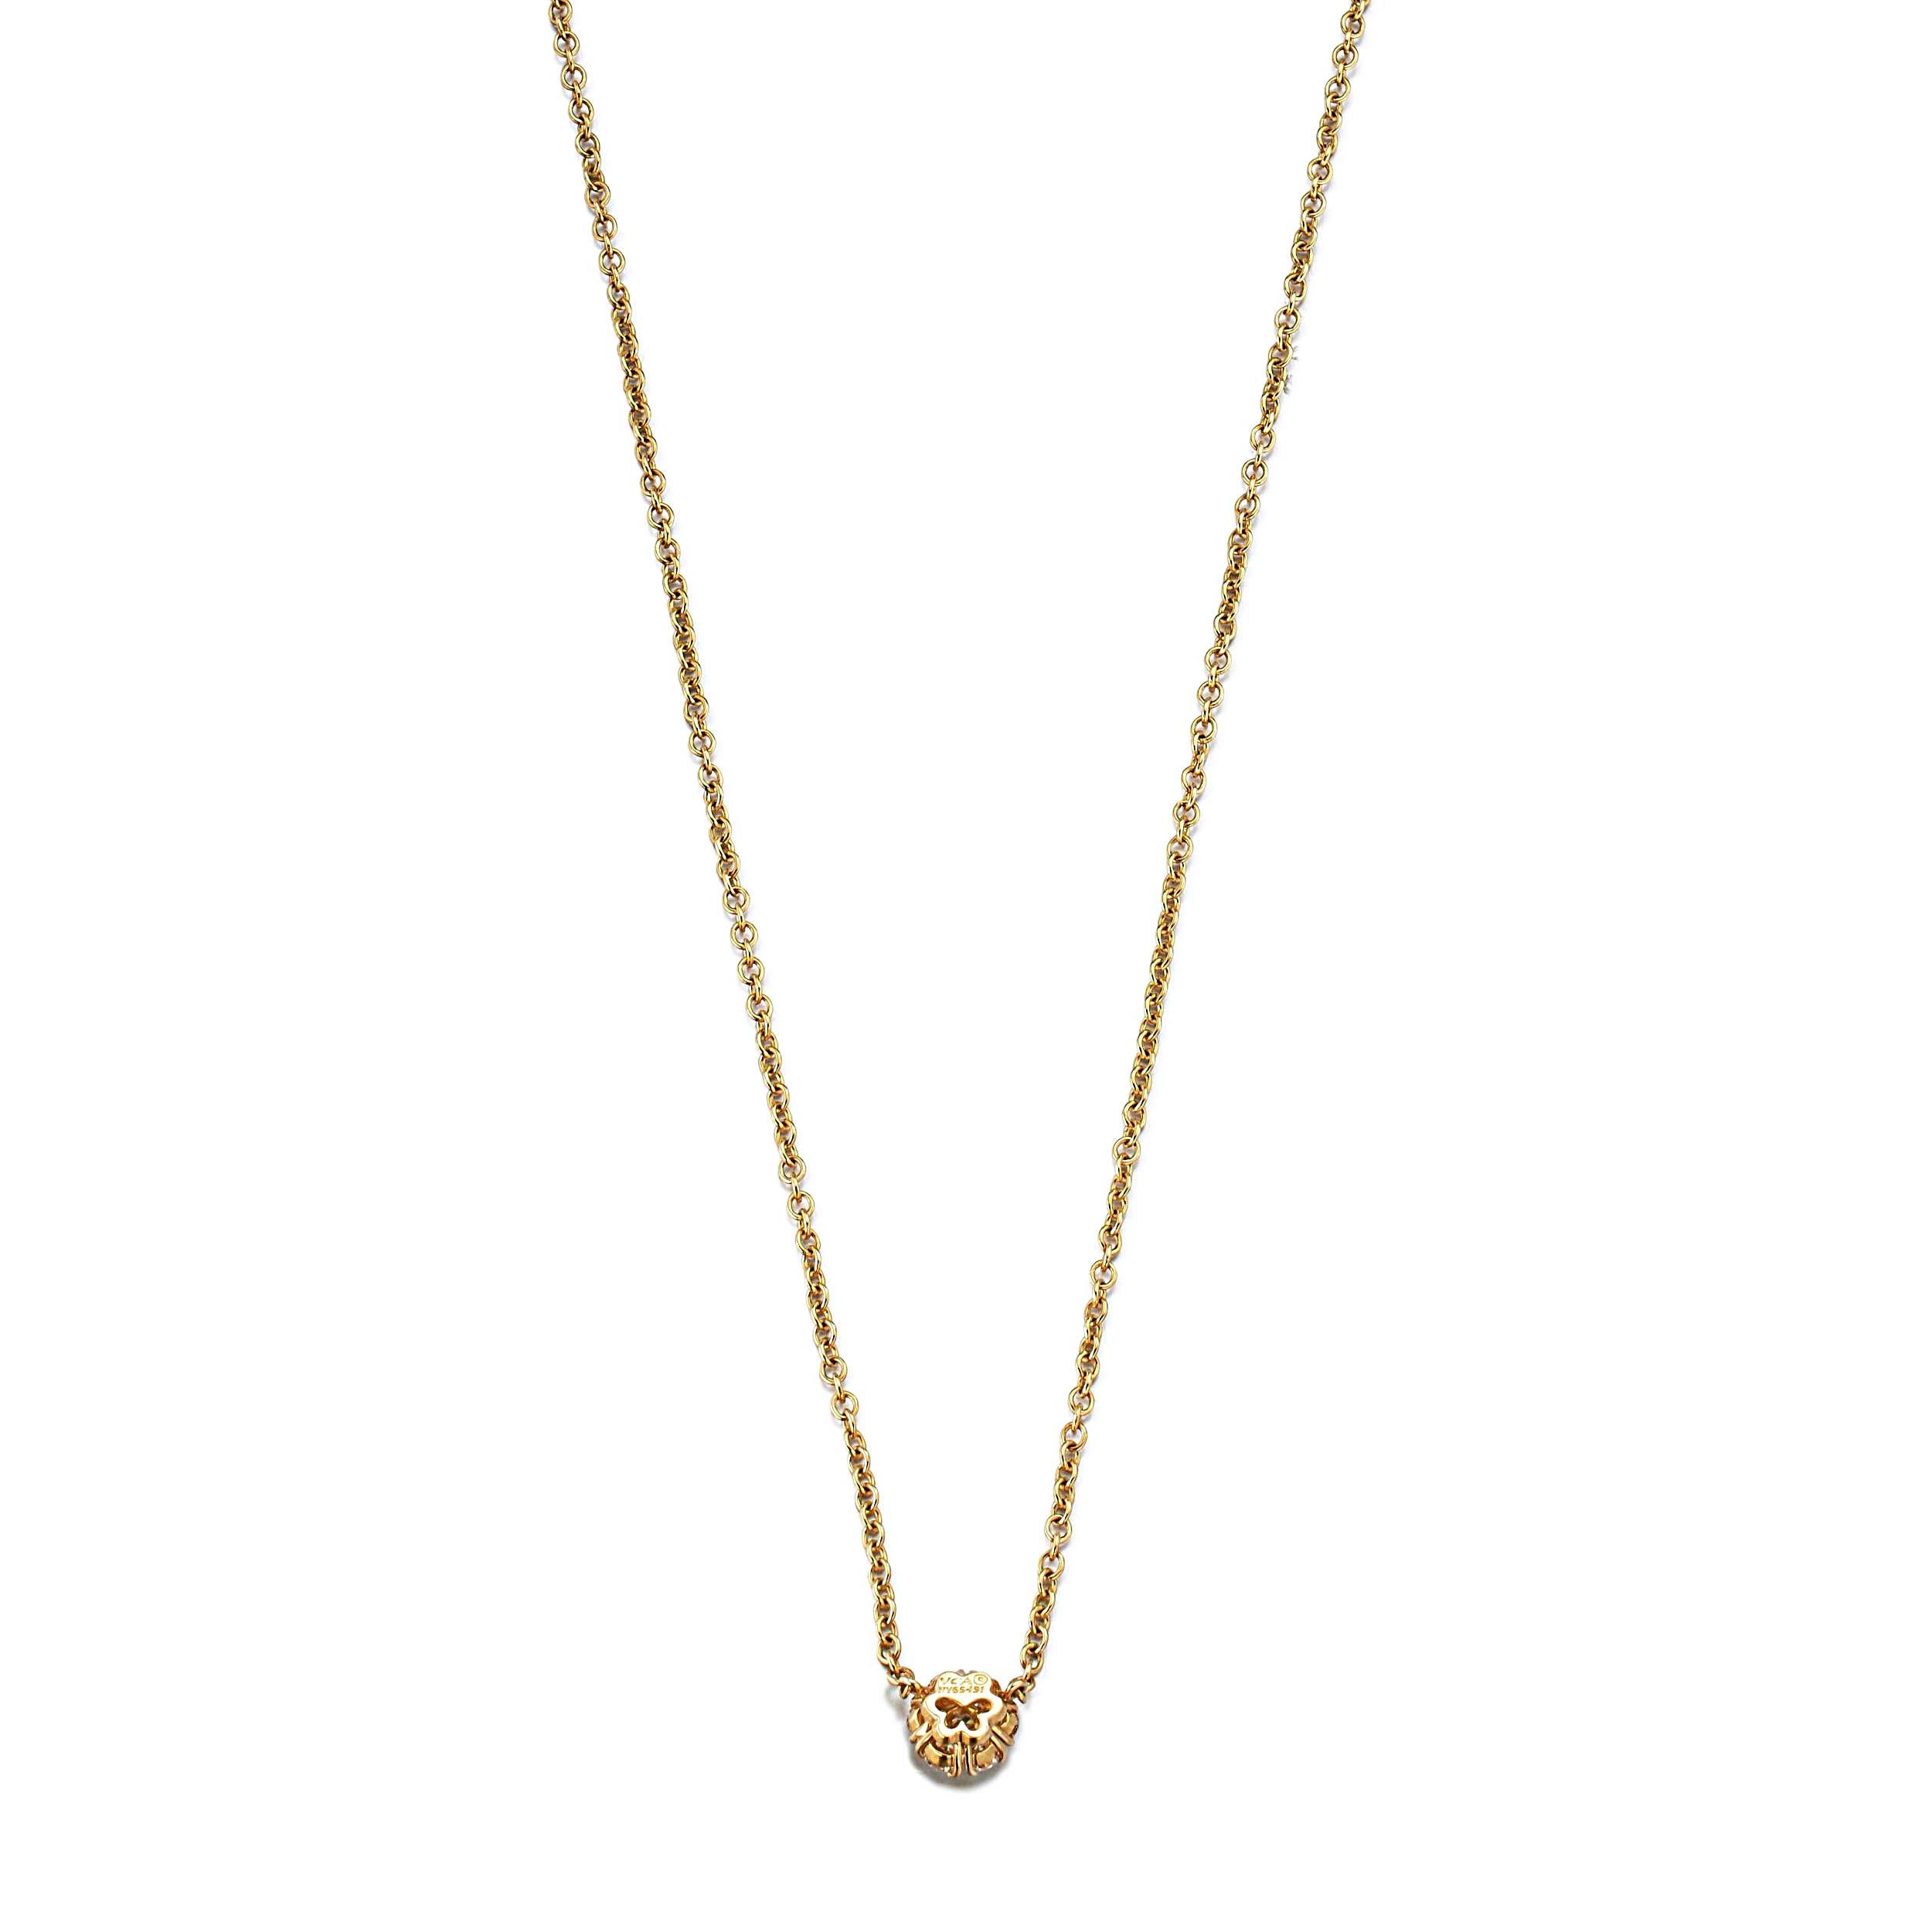 Die Van Cleef & Arpels Fleurette Diamant-Halskette aus Gelbgold ist eine Verkörperung von Raffinesse und zeitloser Eleganz und spiegelt das Engagement der Marke für Schönheit und hervorragende Handwerkskunst wider. Dieses exquisite Stück ist Teil